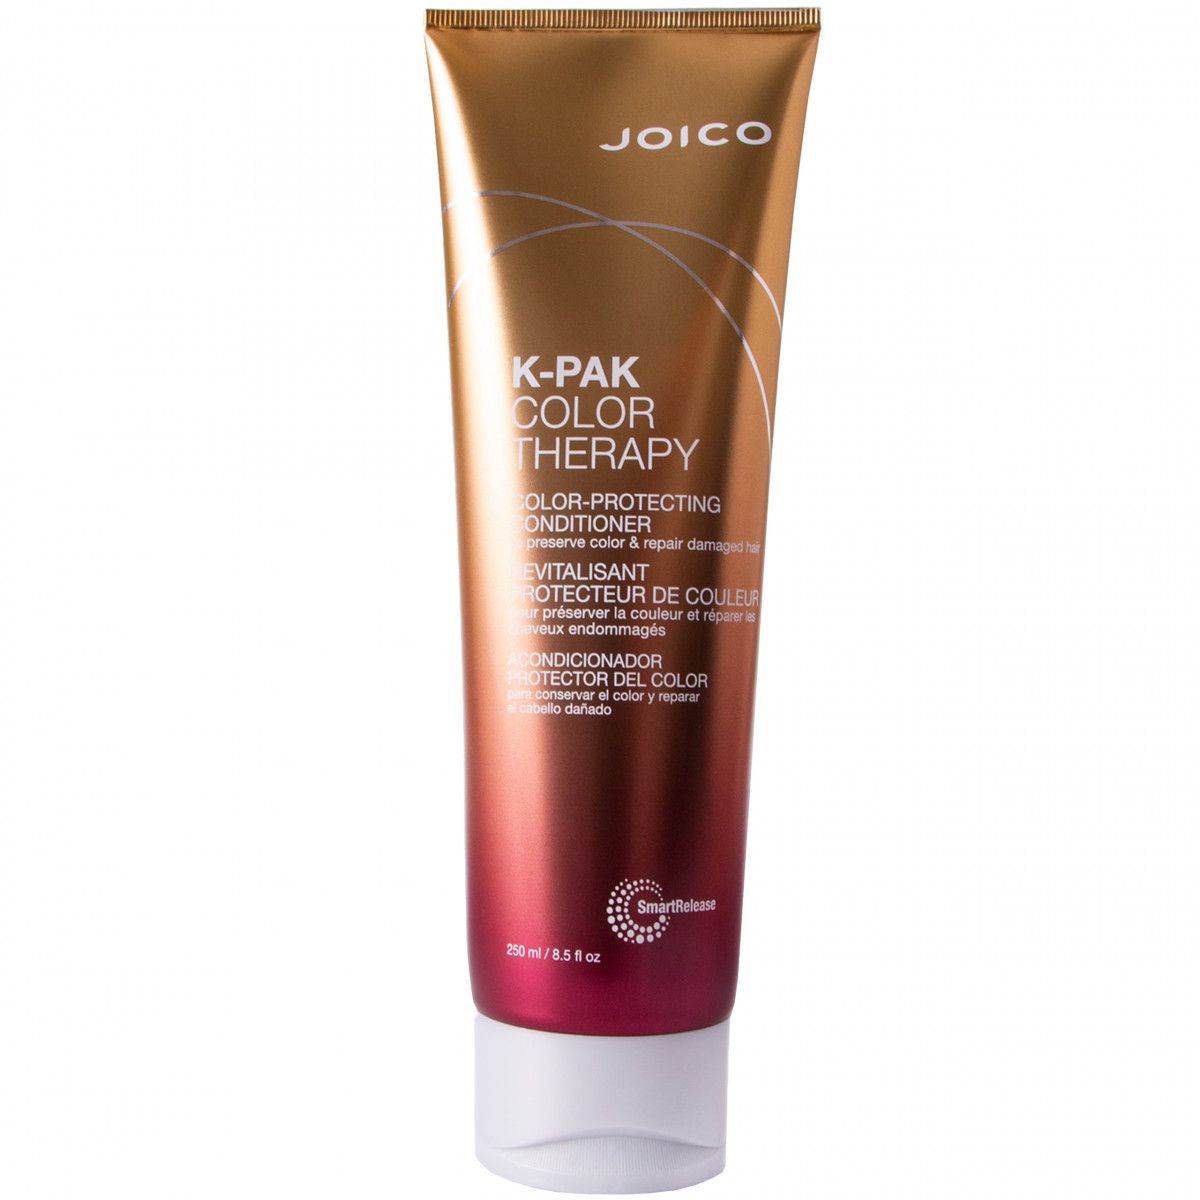 Joico K-PAK Color Therapy odżywka do włosów farbowanych 250 ml Joico - 1